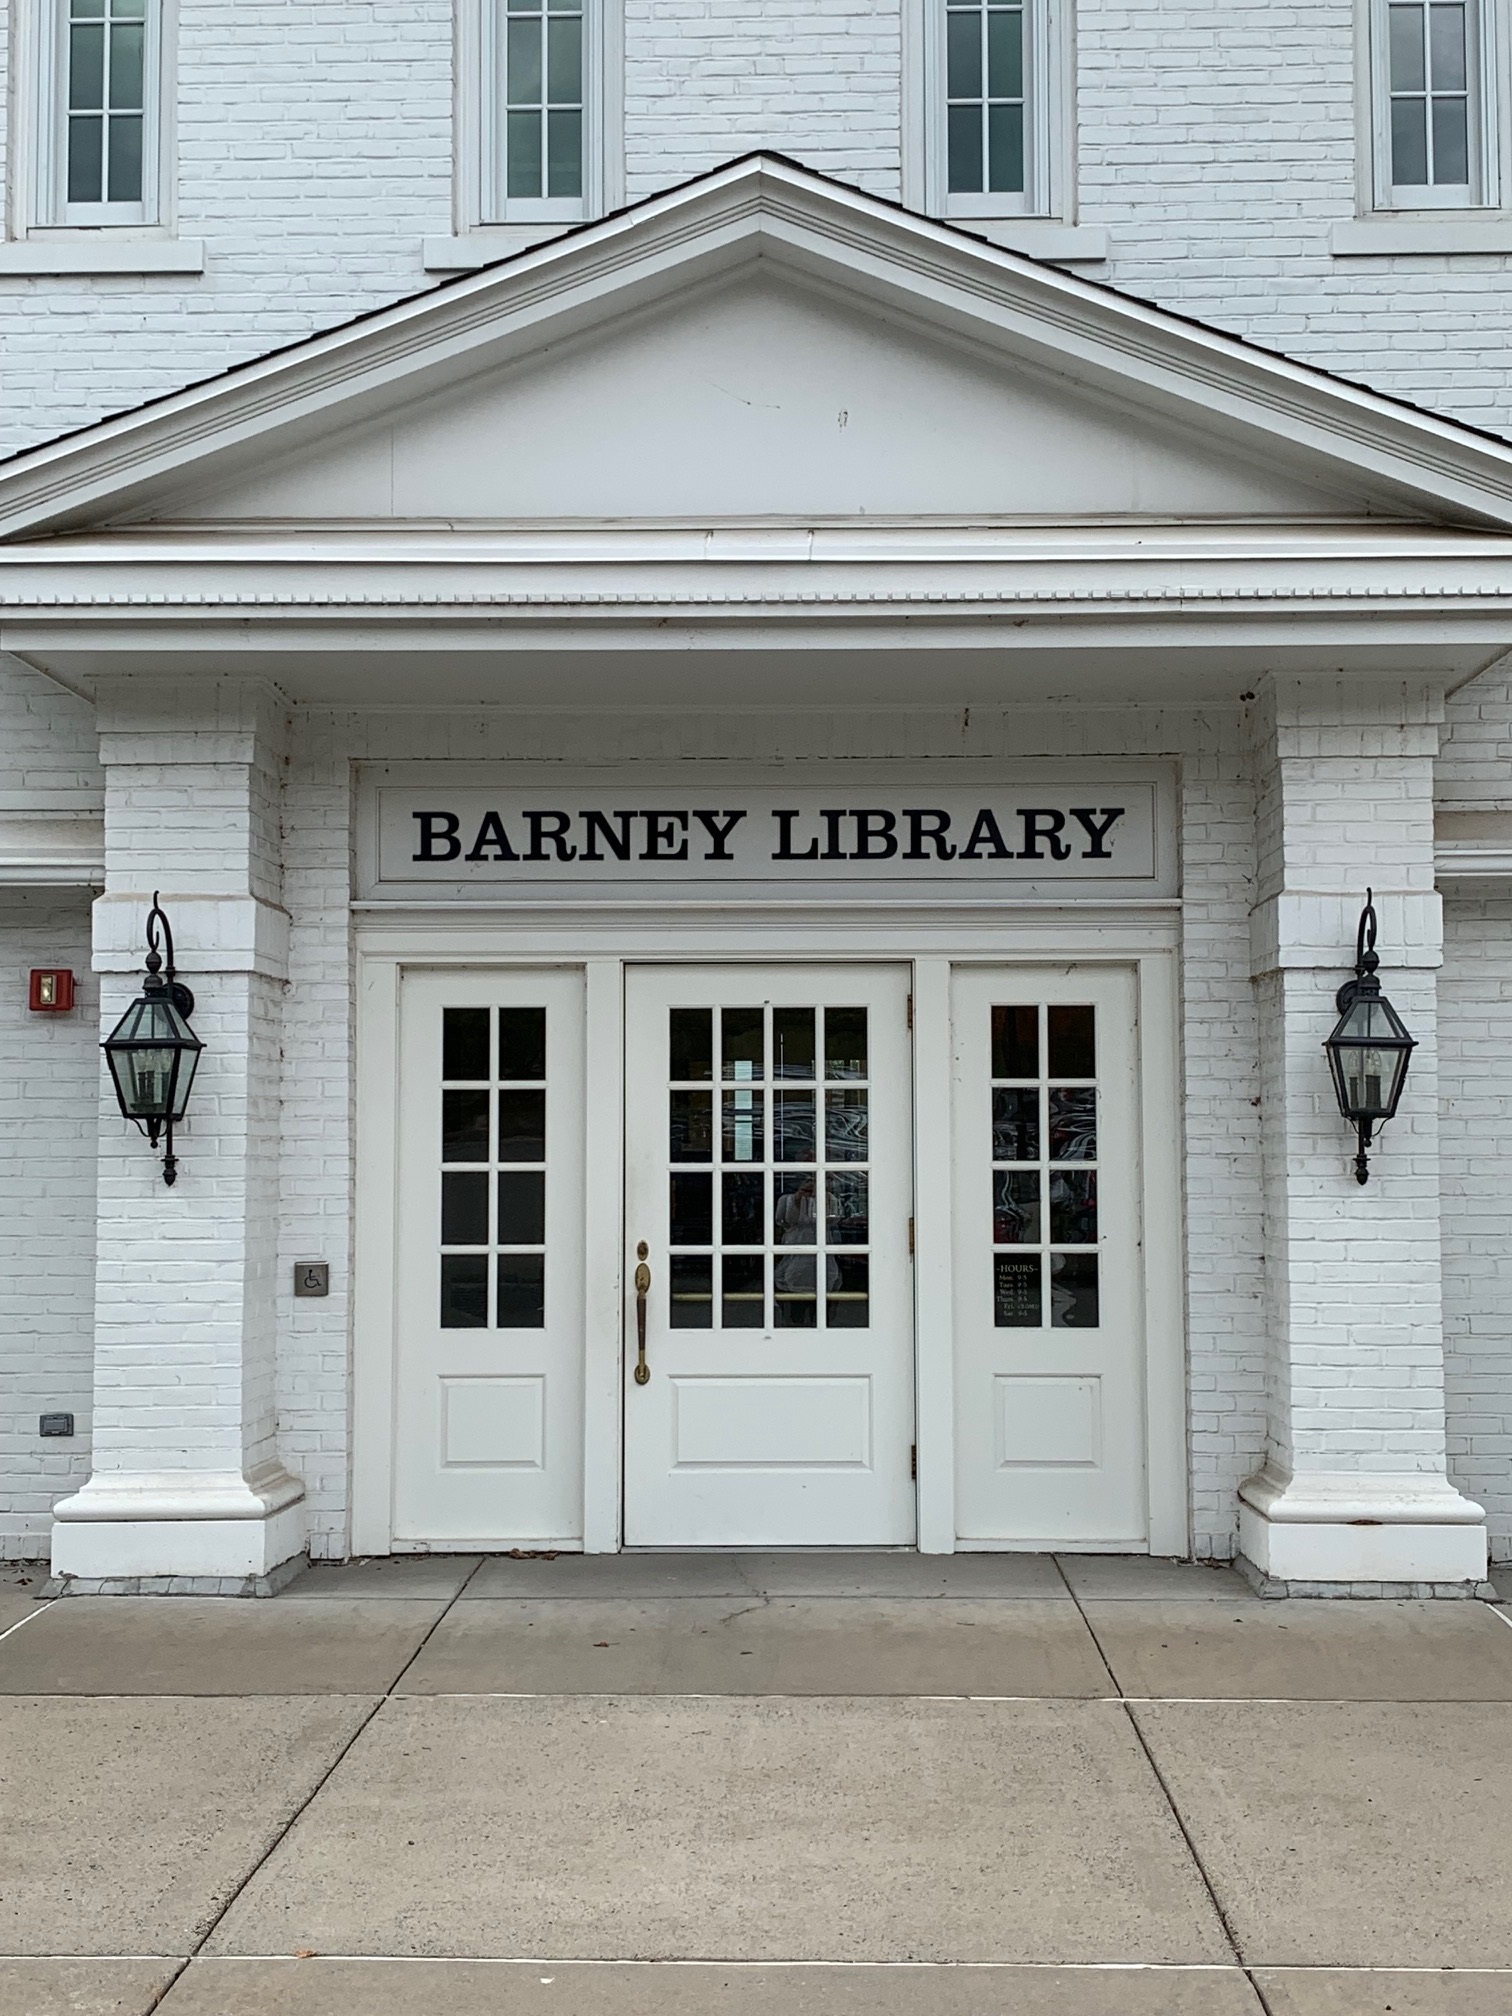 Barney library front door